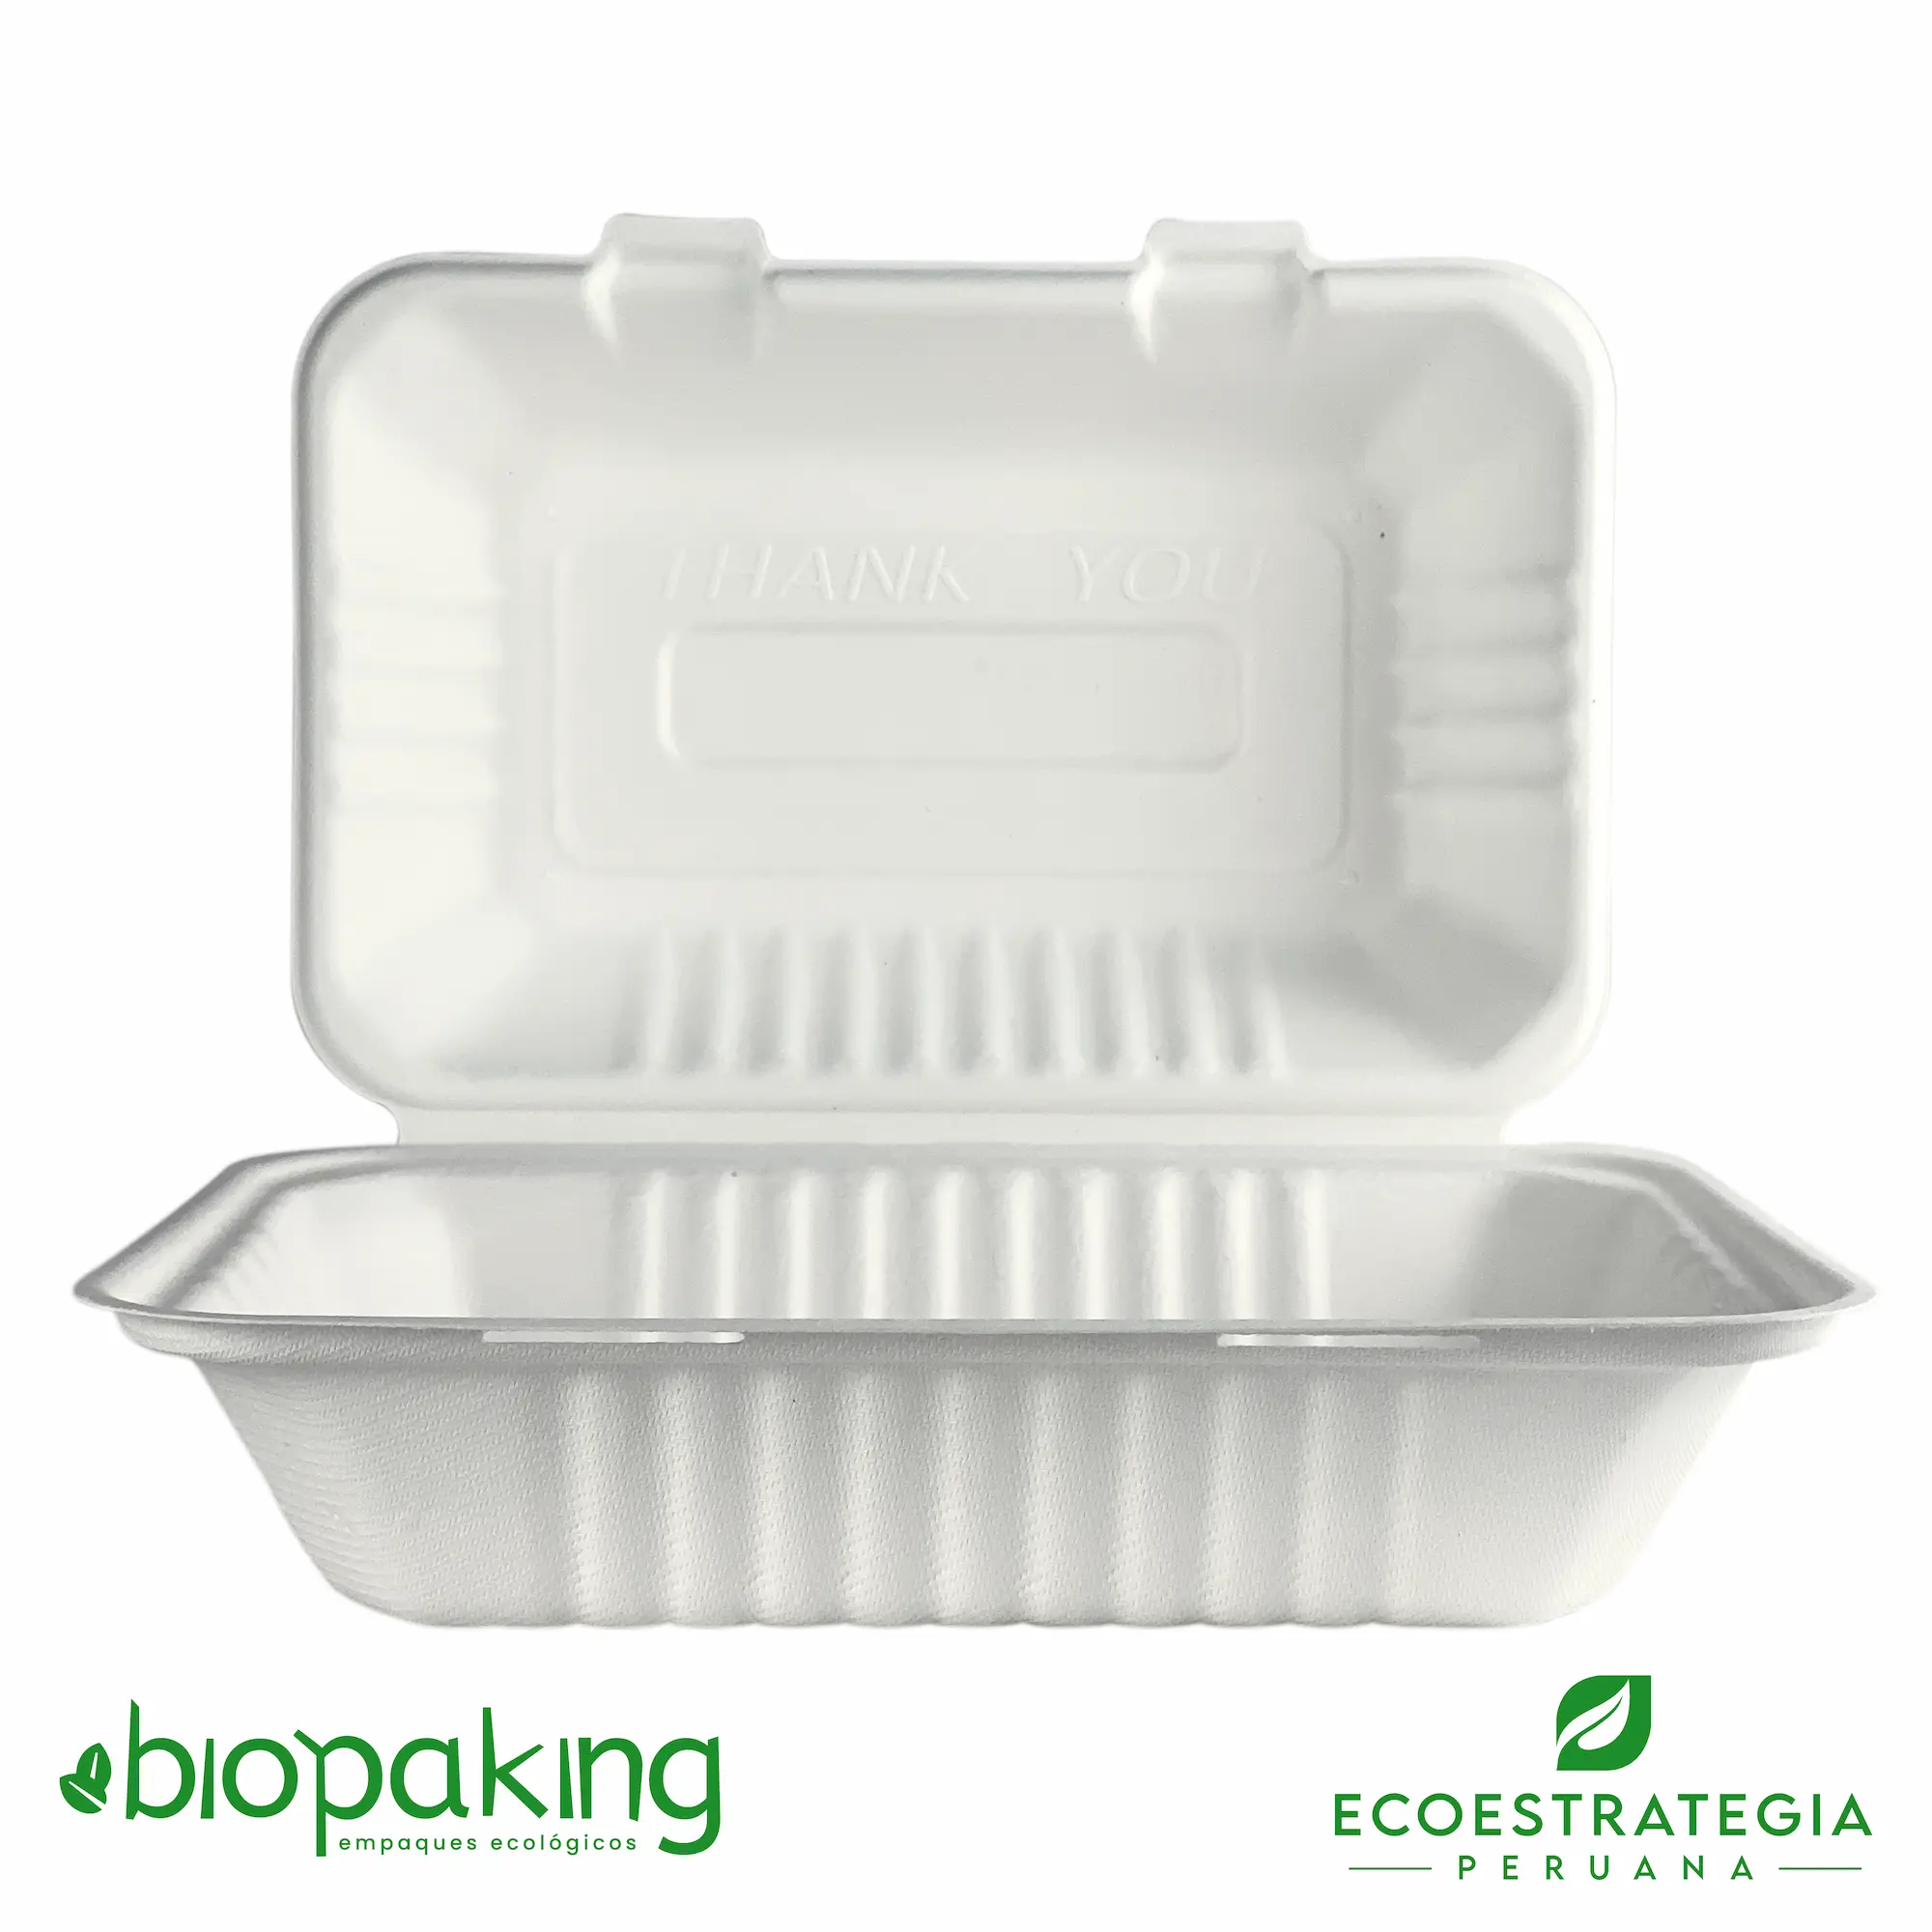 El envase ct5 tiene el codigo EP06-0 y es conocido como ct5 biodegradable, Contenedor ct5 21x16x8, Contenedor biodegradable 9 x 6 3”, Contenedor cuadrado 900ml, Contenedor bisagra 900ml, Clamshell biodegradable 900 ml, Bg-9x6, Contenedor 5 bioform fibra-ks bagazo de caña, Envase ct5, BCS96, Fbox6x9, 0111125, BCS06, TP002 (CT5), Envase 9x6 pulgadas pulpa de caña de azúcar, Contenedor Eco 900 ml (Ct5), Contenedor Eco 900 fibra de caña, Contenedor ct5, Envase ct5, Contenedor 5 fibra, ct5 9x6, ct5 biodegradable Perú, Box mediano, Envase biodegradable para Menú, Envase genérico biodegradable, v5, envase biodegradable 23 x15, importadores de envases biodegradable ct5, distribuidores ct5 biodegradable, mayoristas ct5 biodegradable.